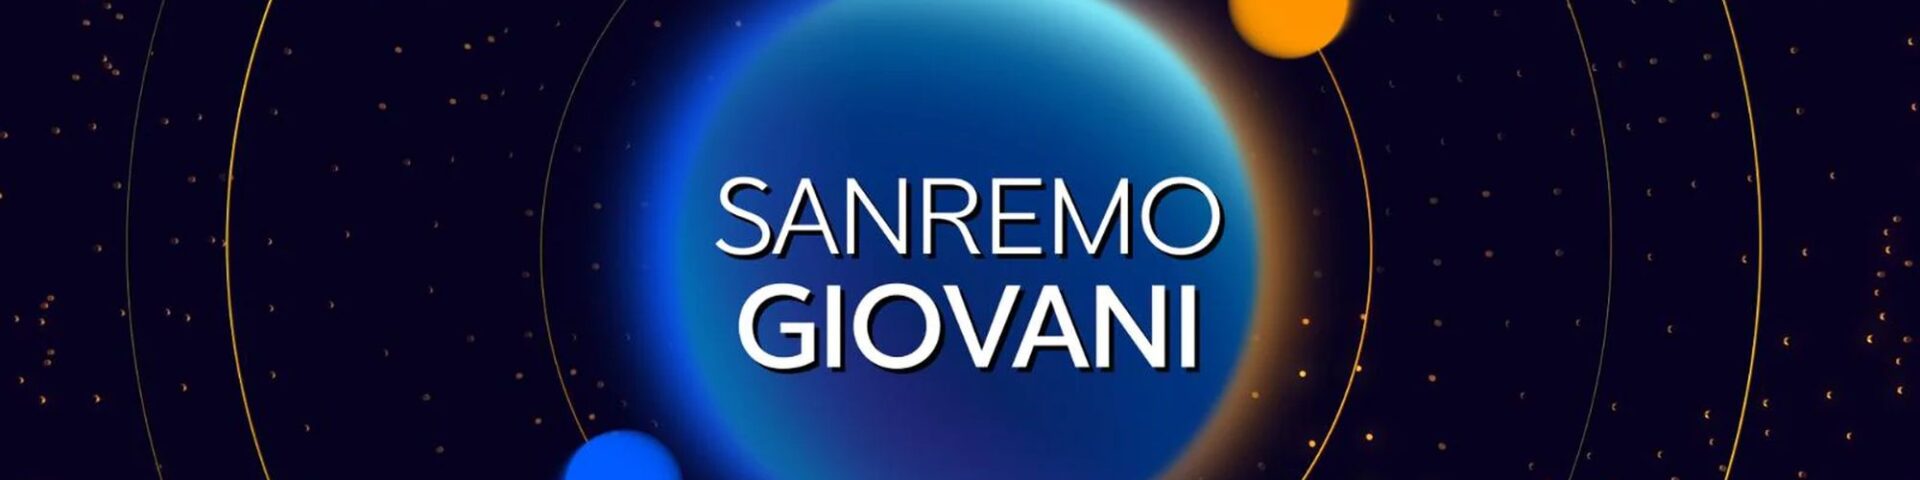 A che ora finisce Sanremo Giovani 2021?